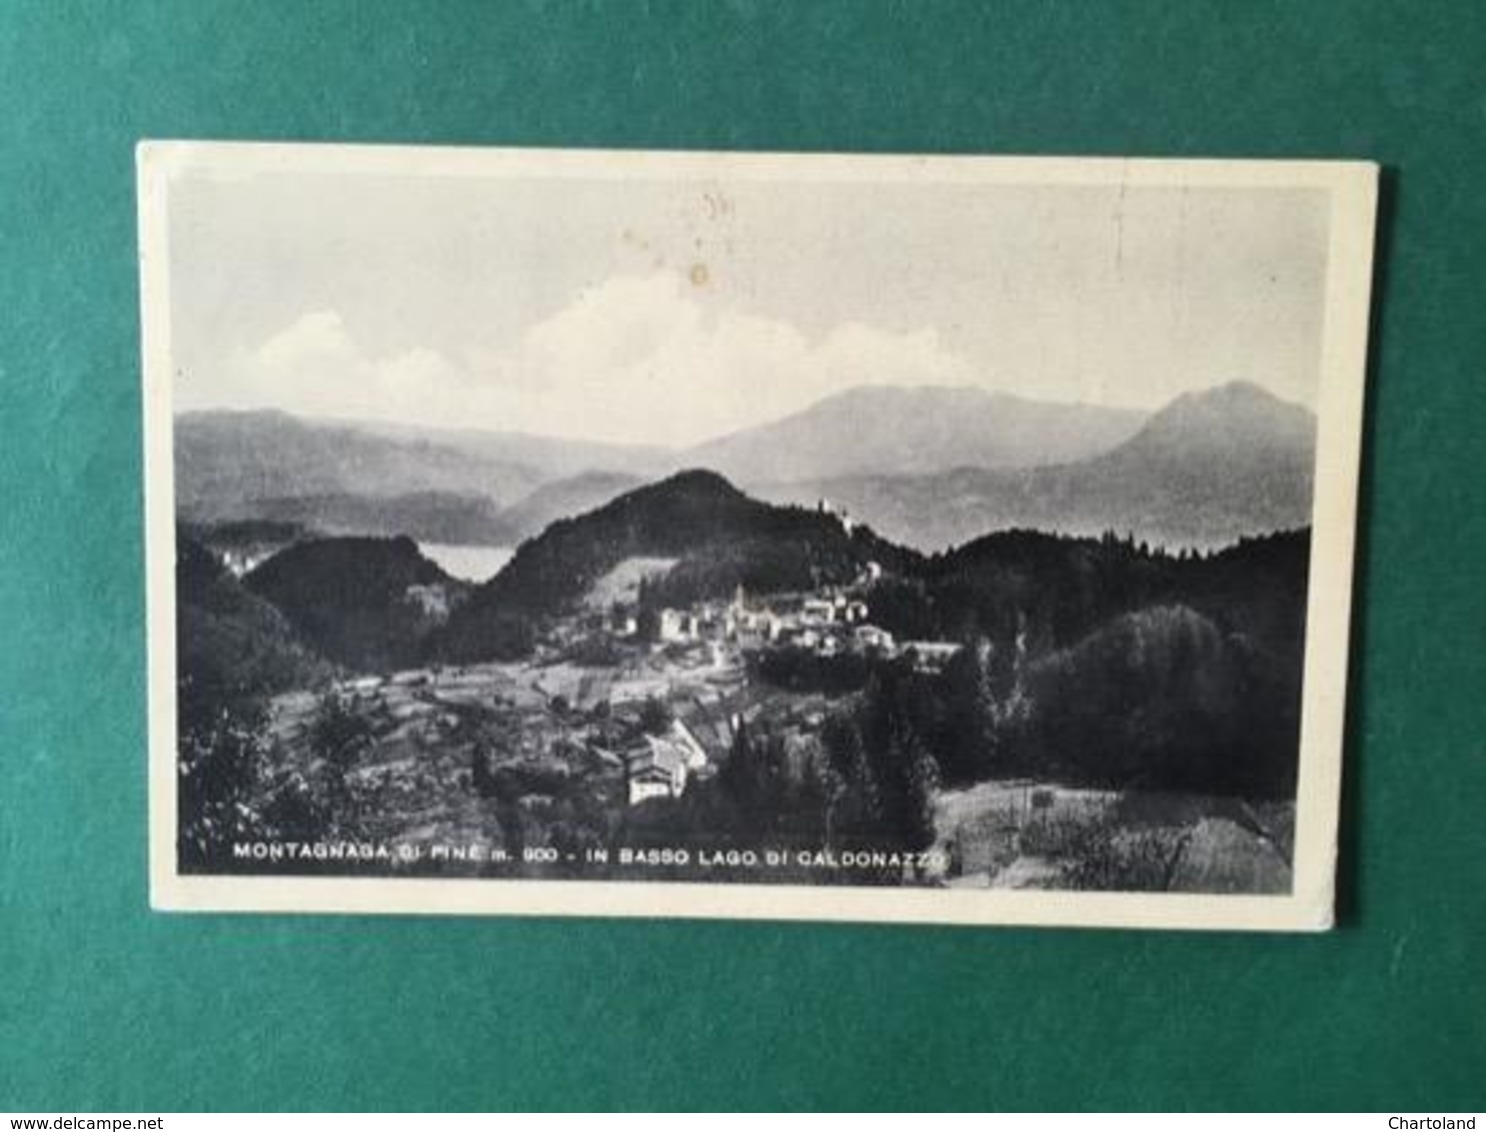 Cartolina Montagna Di Pine - In Basso Lago Di Caldonazzo - 1952 - Trento